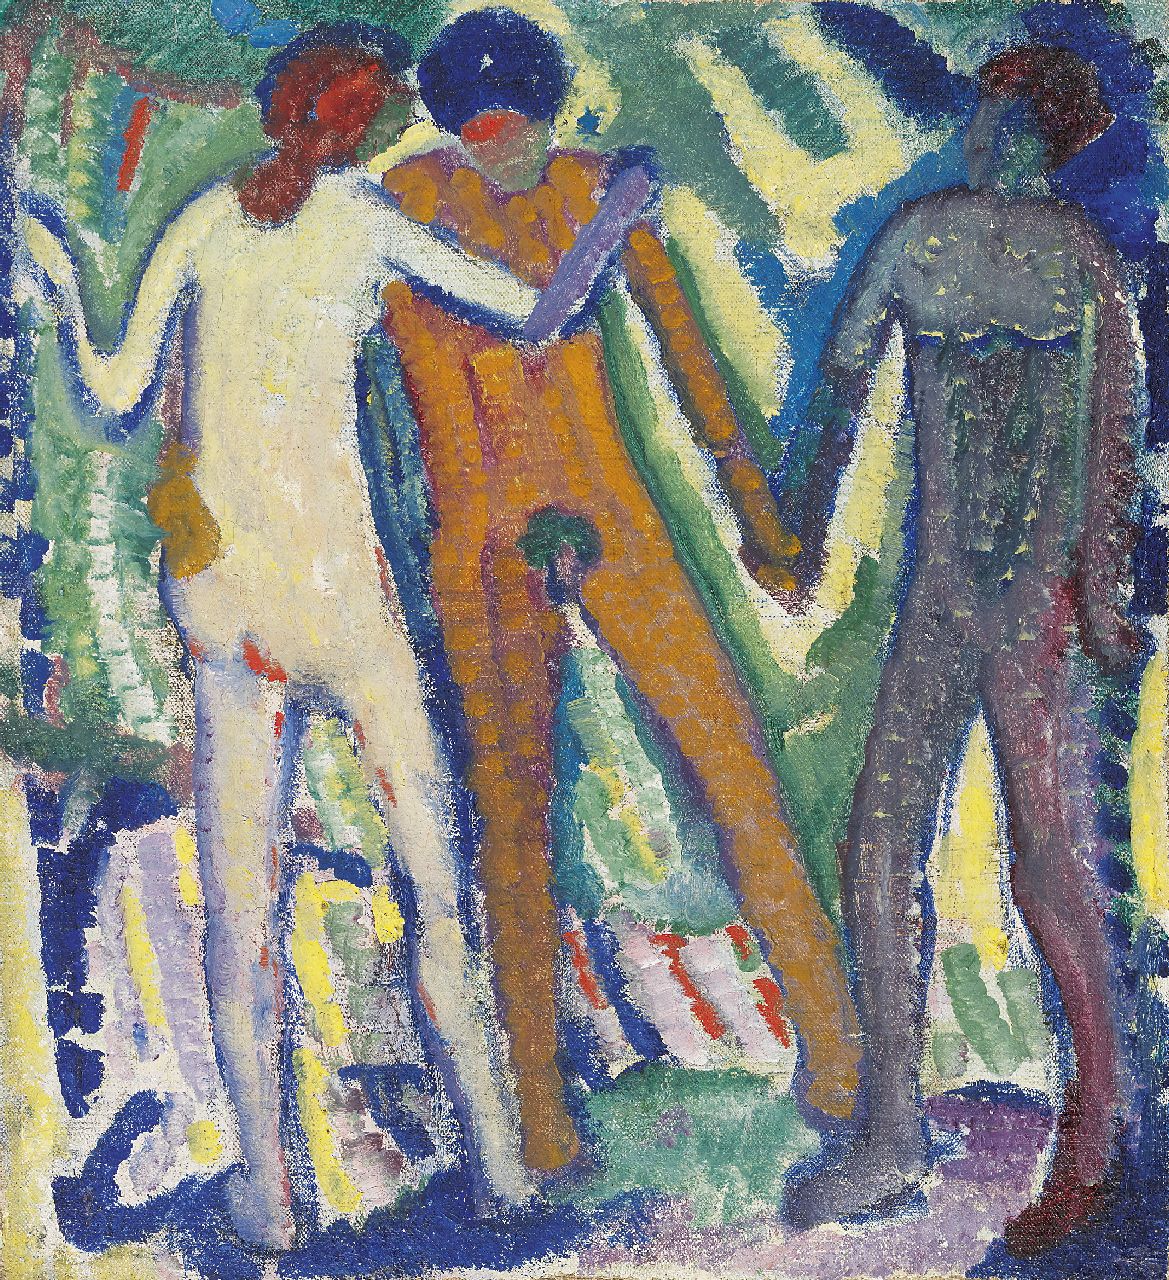 Schwarz S.  | Samuel 'Mommie' Schwarz, Drie figuren, olieverf op doek 42,2 x 37,5 cm, te dateren ca. 1912-1913